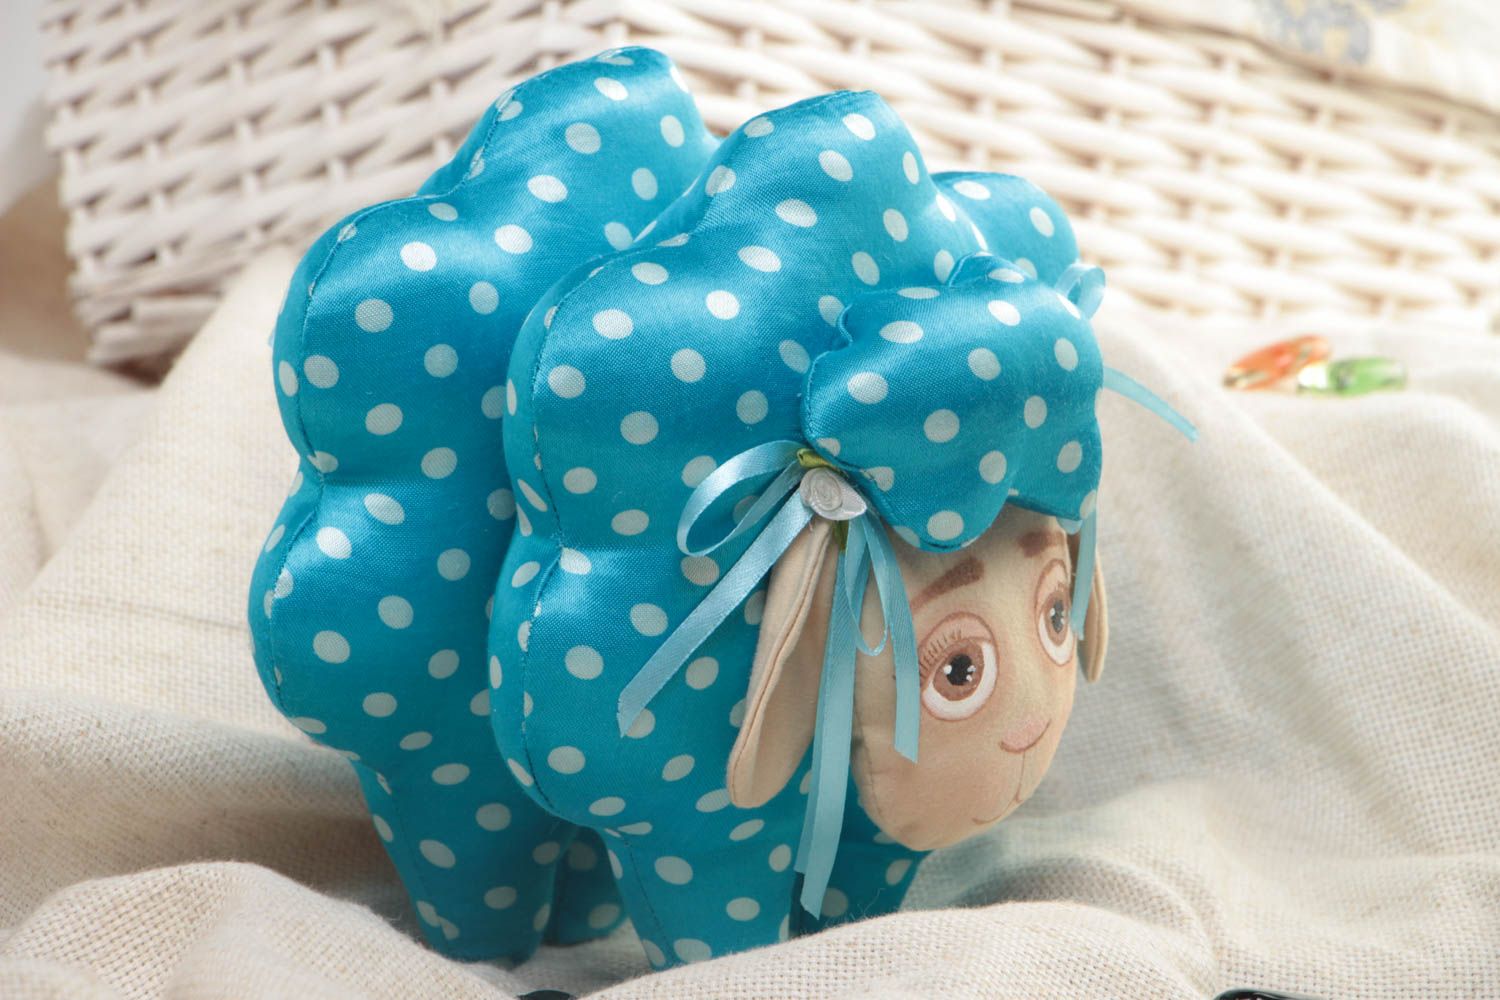 Мягкая игрушка овечка из ткани ручной работы детская красивая голубая в горох фото 1